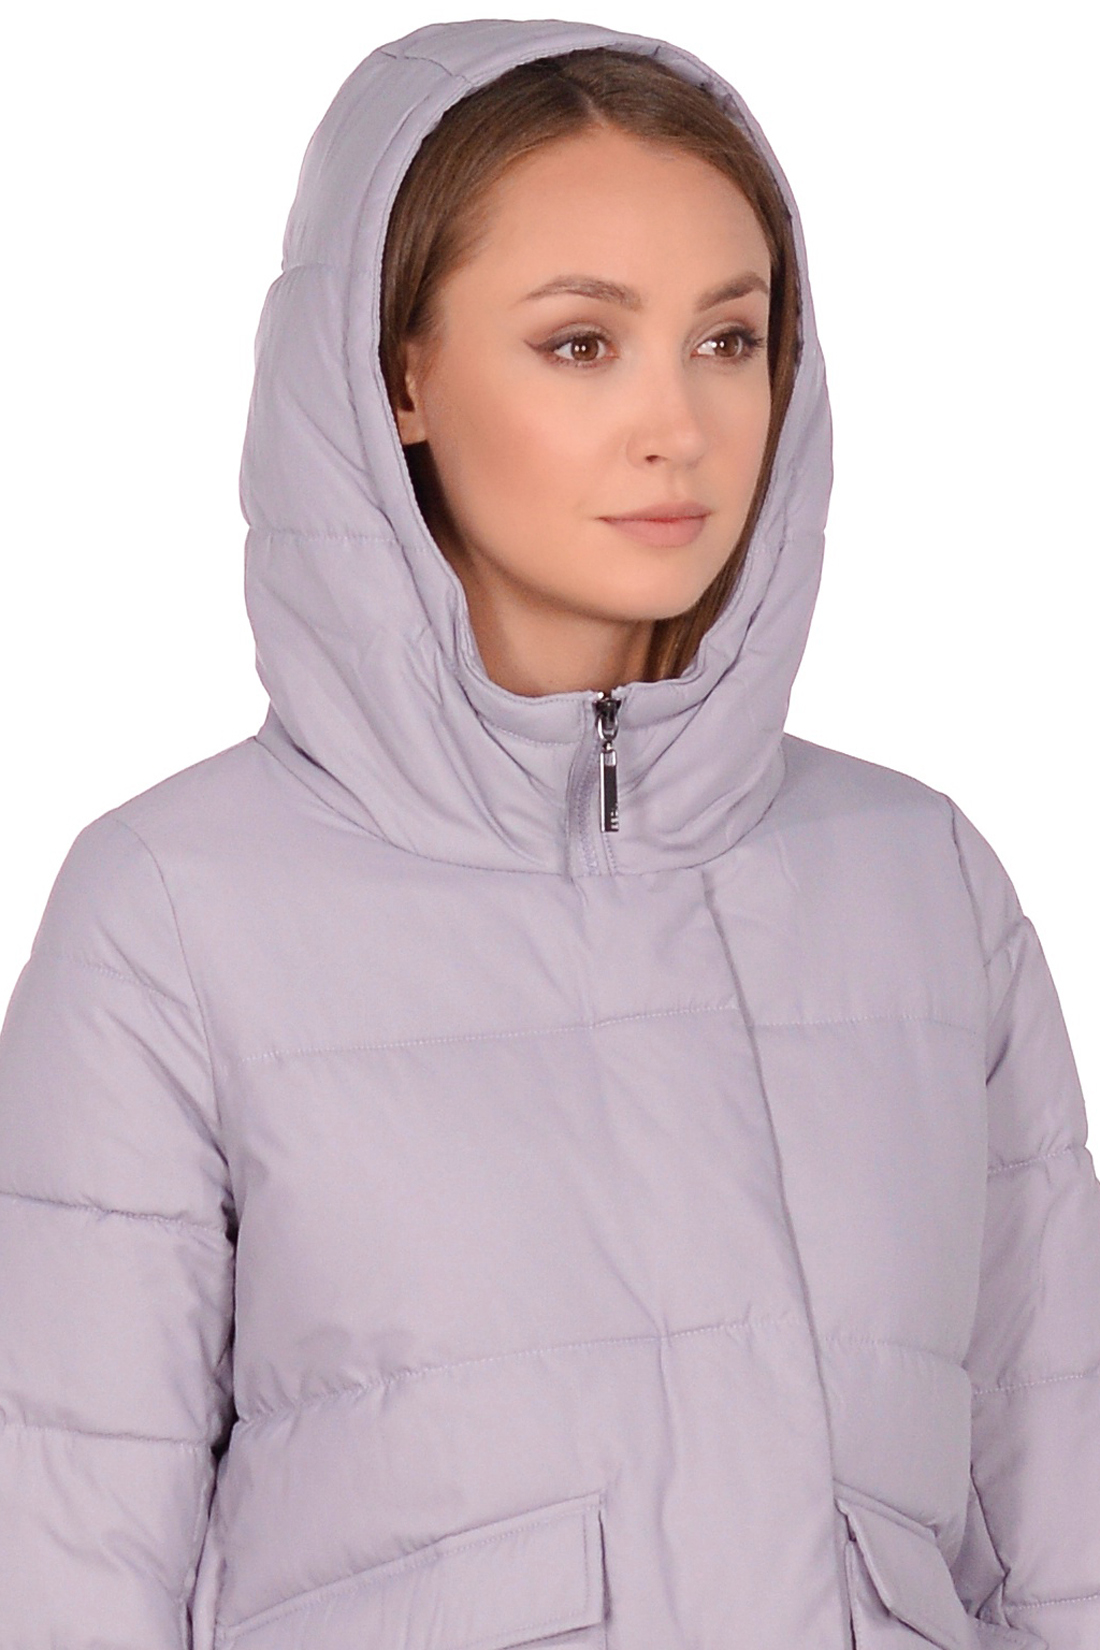 Куртка-кокон с накладными карманами (арт. baon B038582), размер XXL, цвет сиреневый Куртка-кокон с накладными карманами (арт. baon B038582) - фото 3